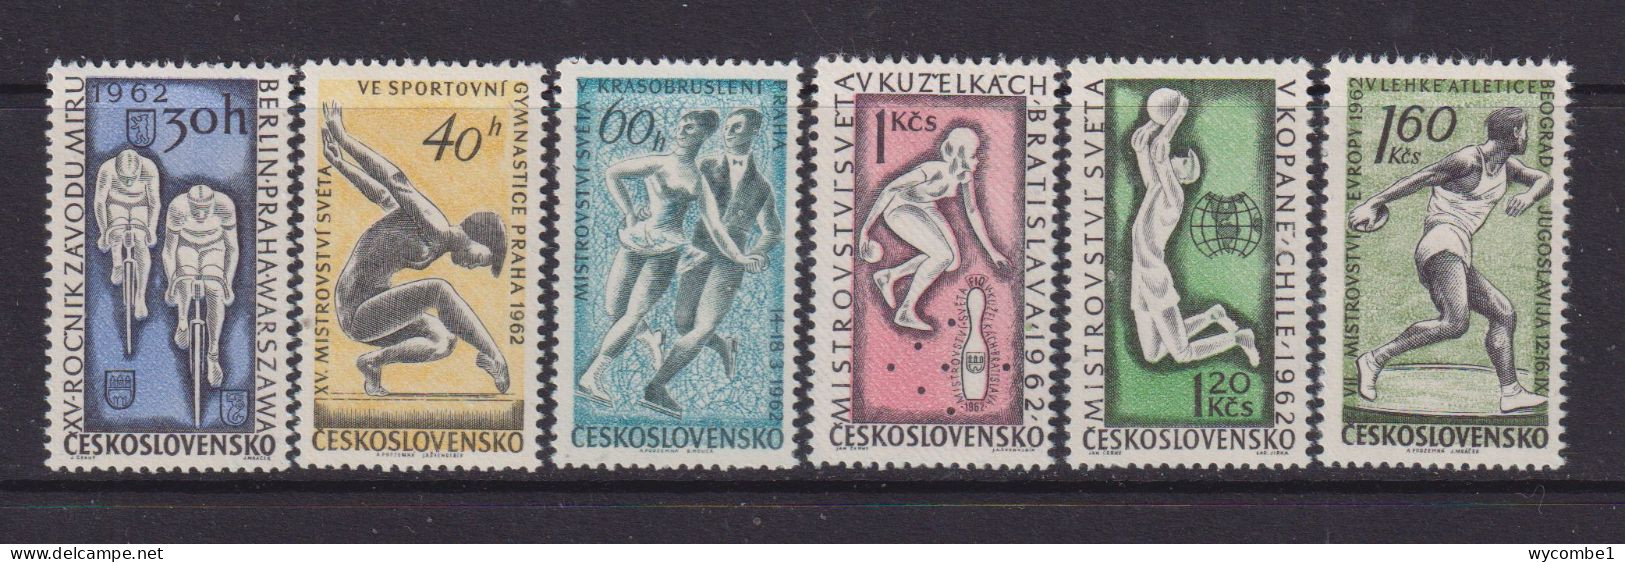 CZECHOSLOVAKIA  - 1962 Sports Events Set Never Hinged Mint - Neufs